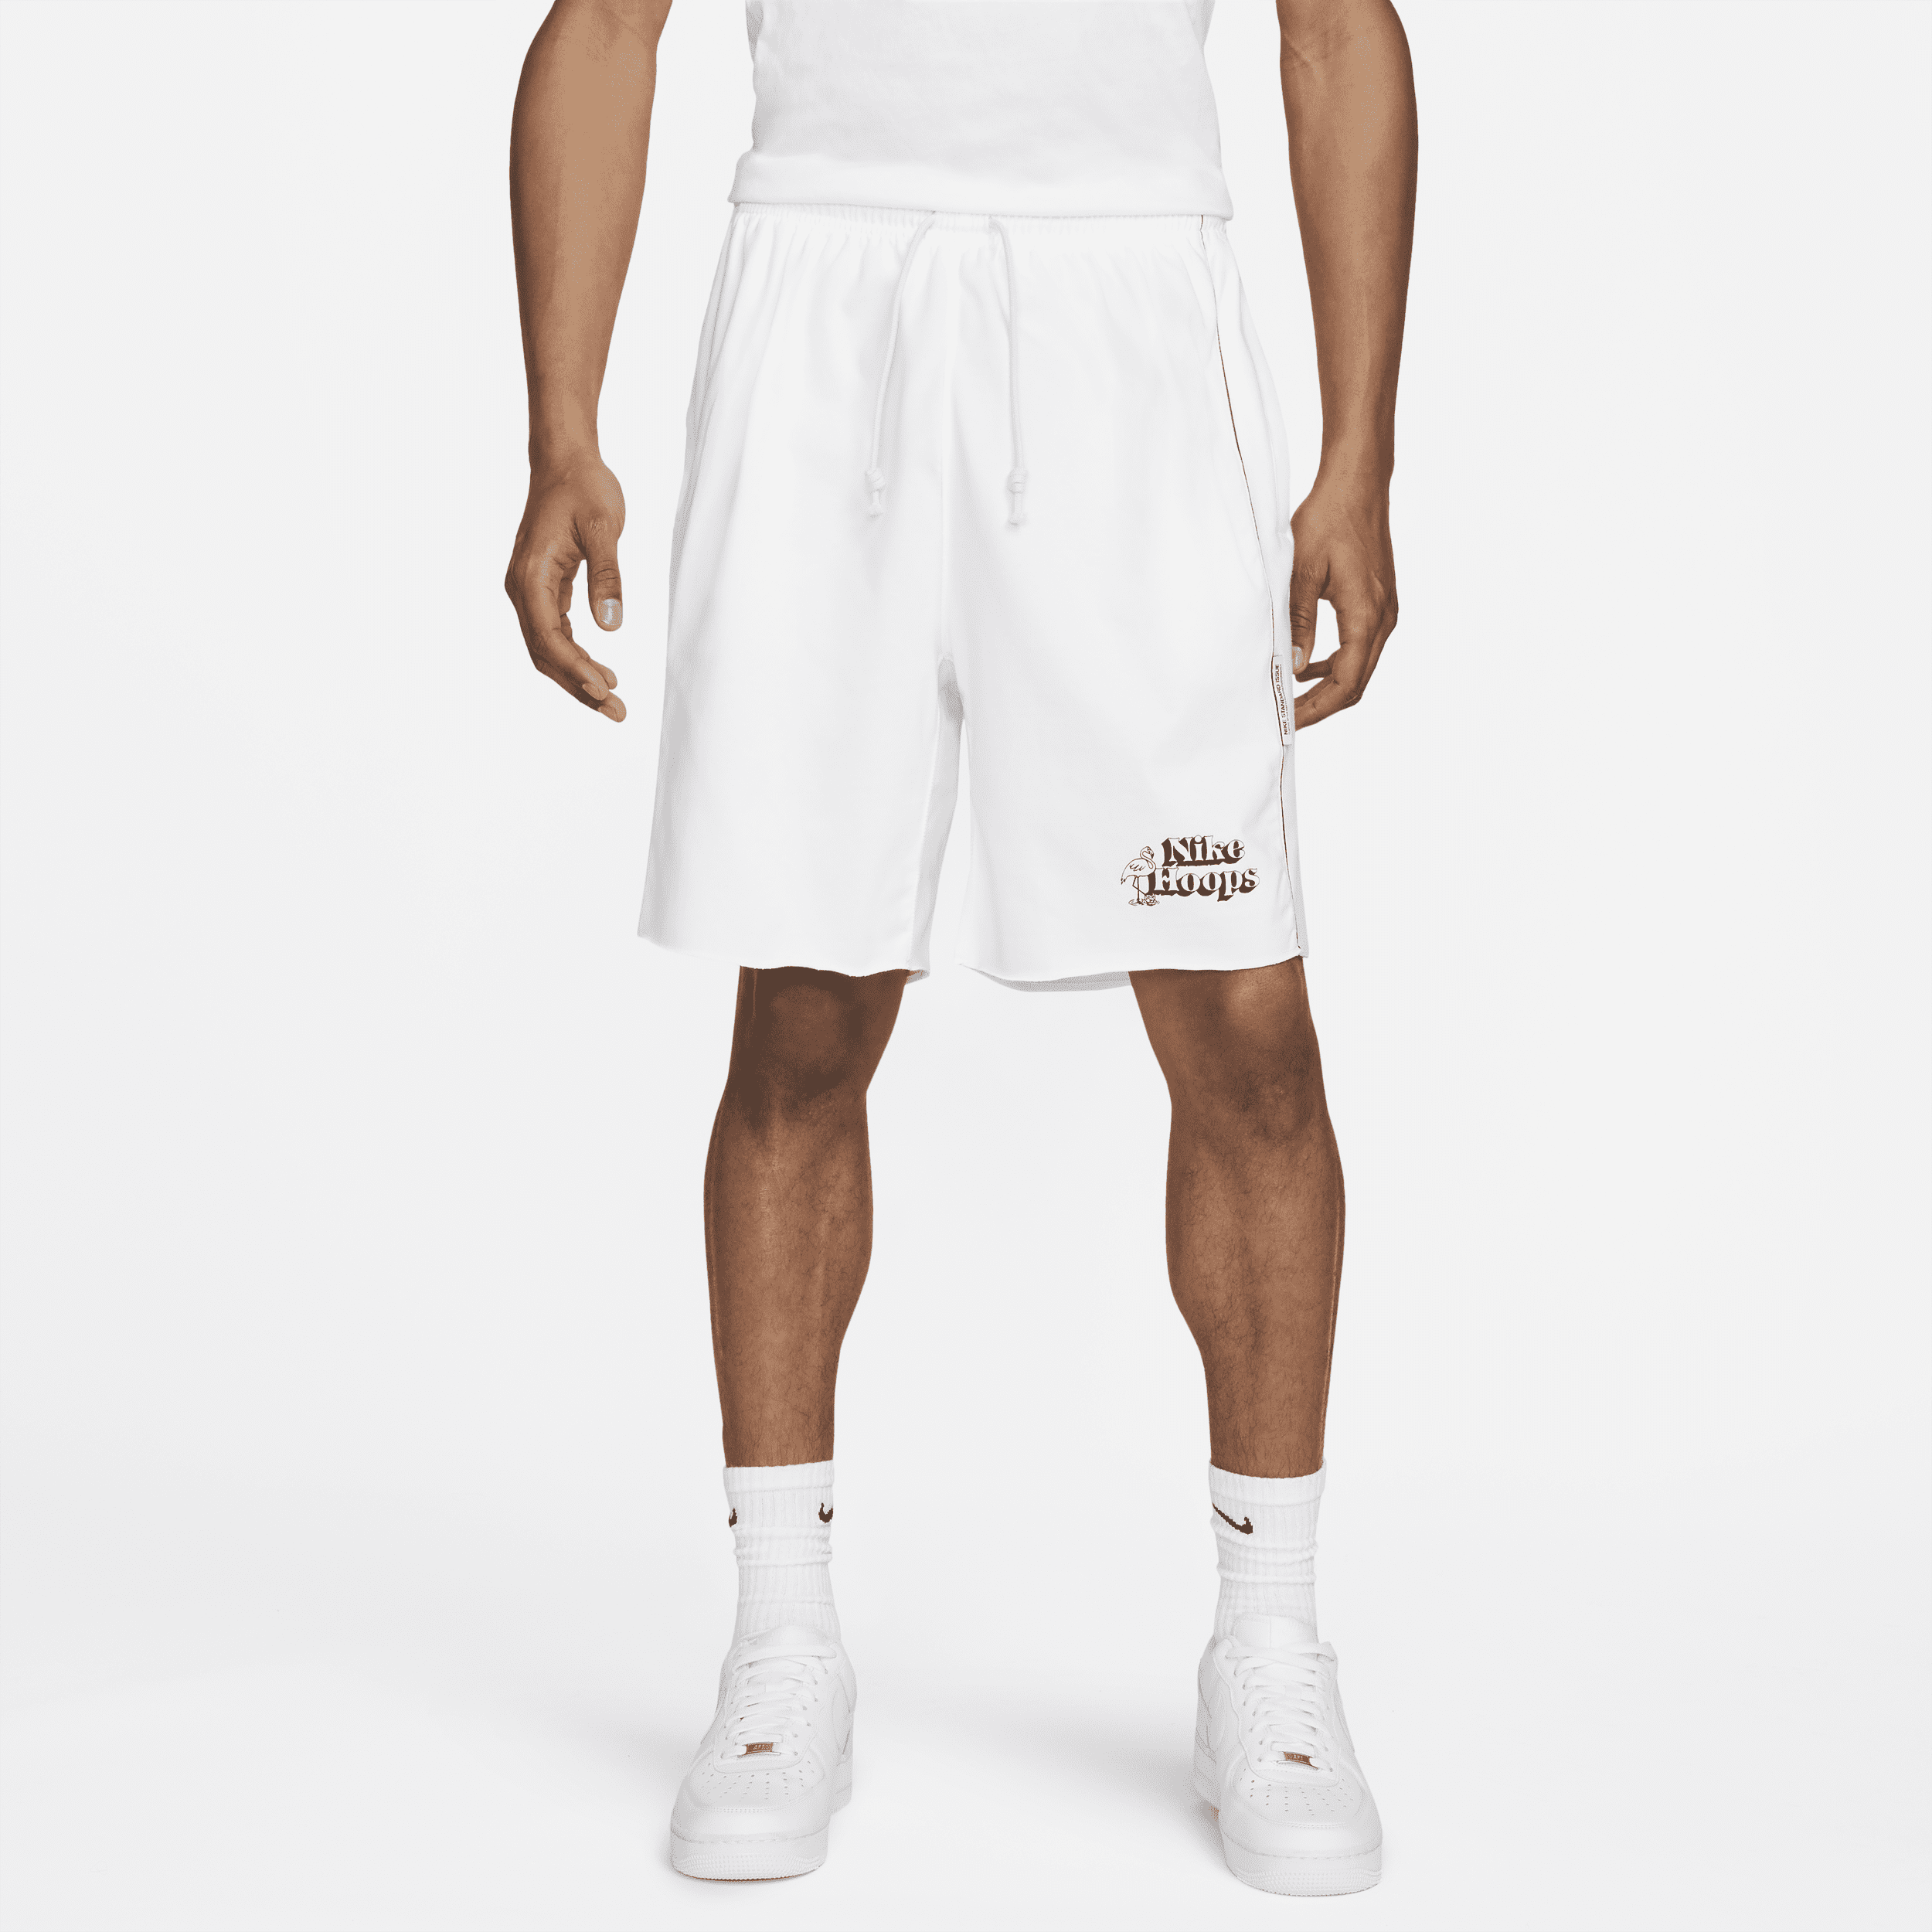 Nike Men's Standard Issue Basketball Shorts In White | ModeSens